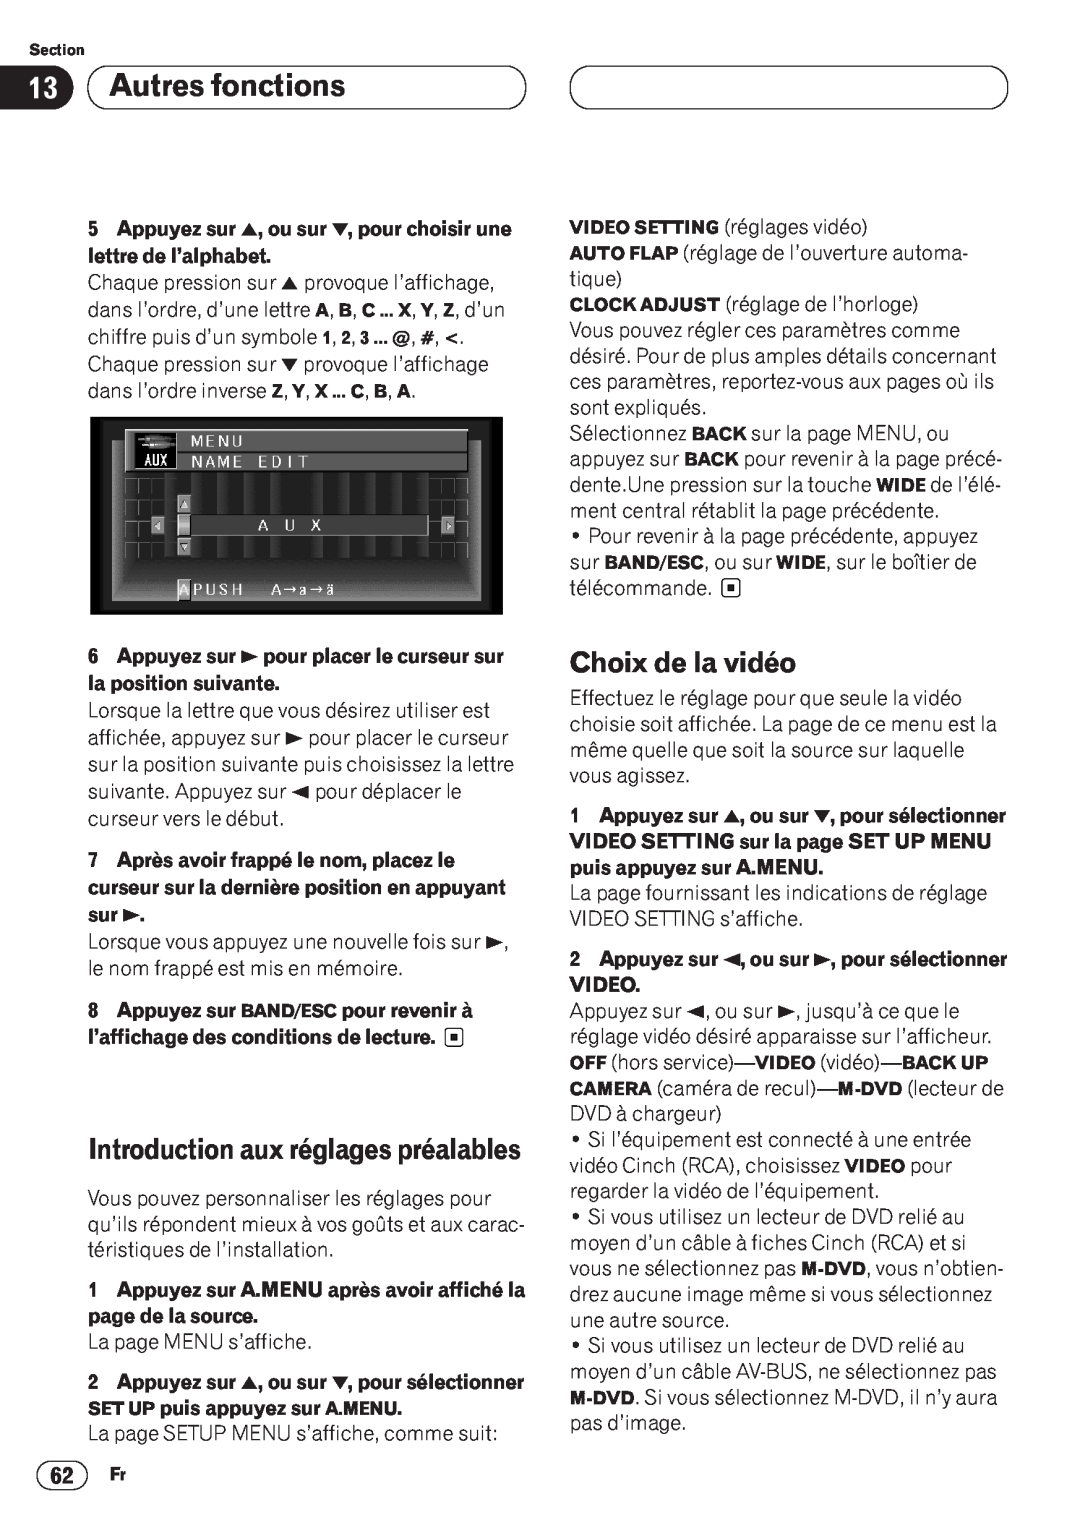 Pioneer AVH-P6400CD operation manual Autres fonctions, Choix de la vidéo, Introduction aux réglages préalables 